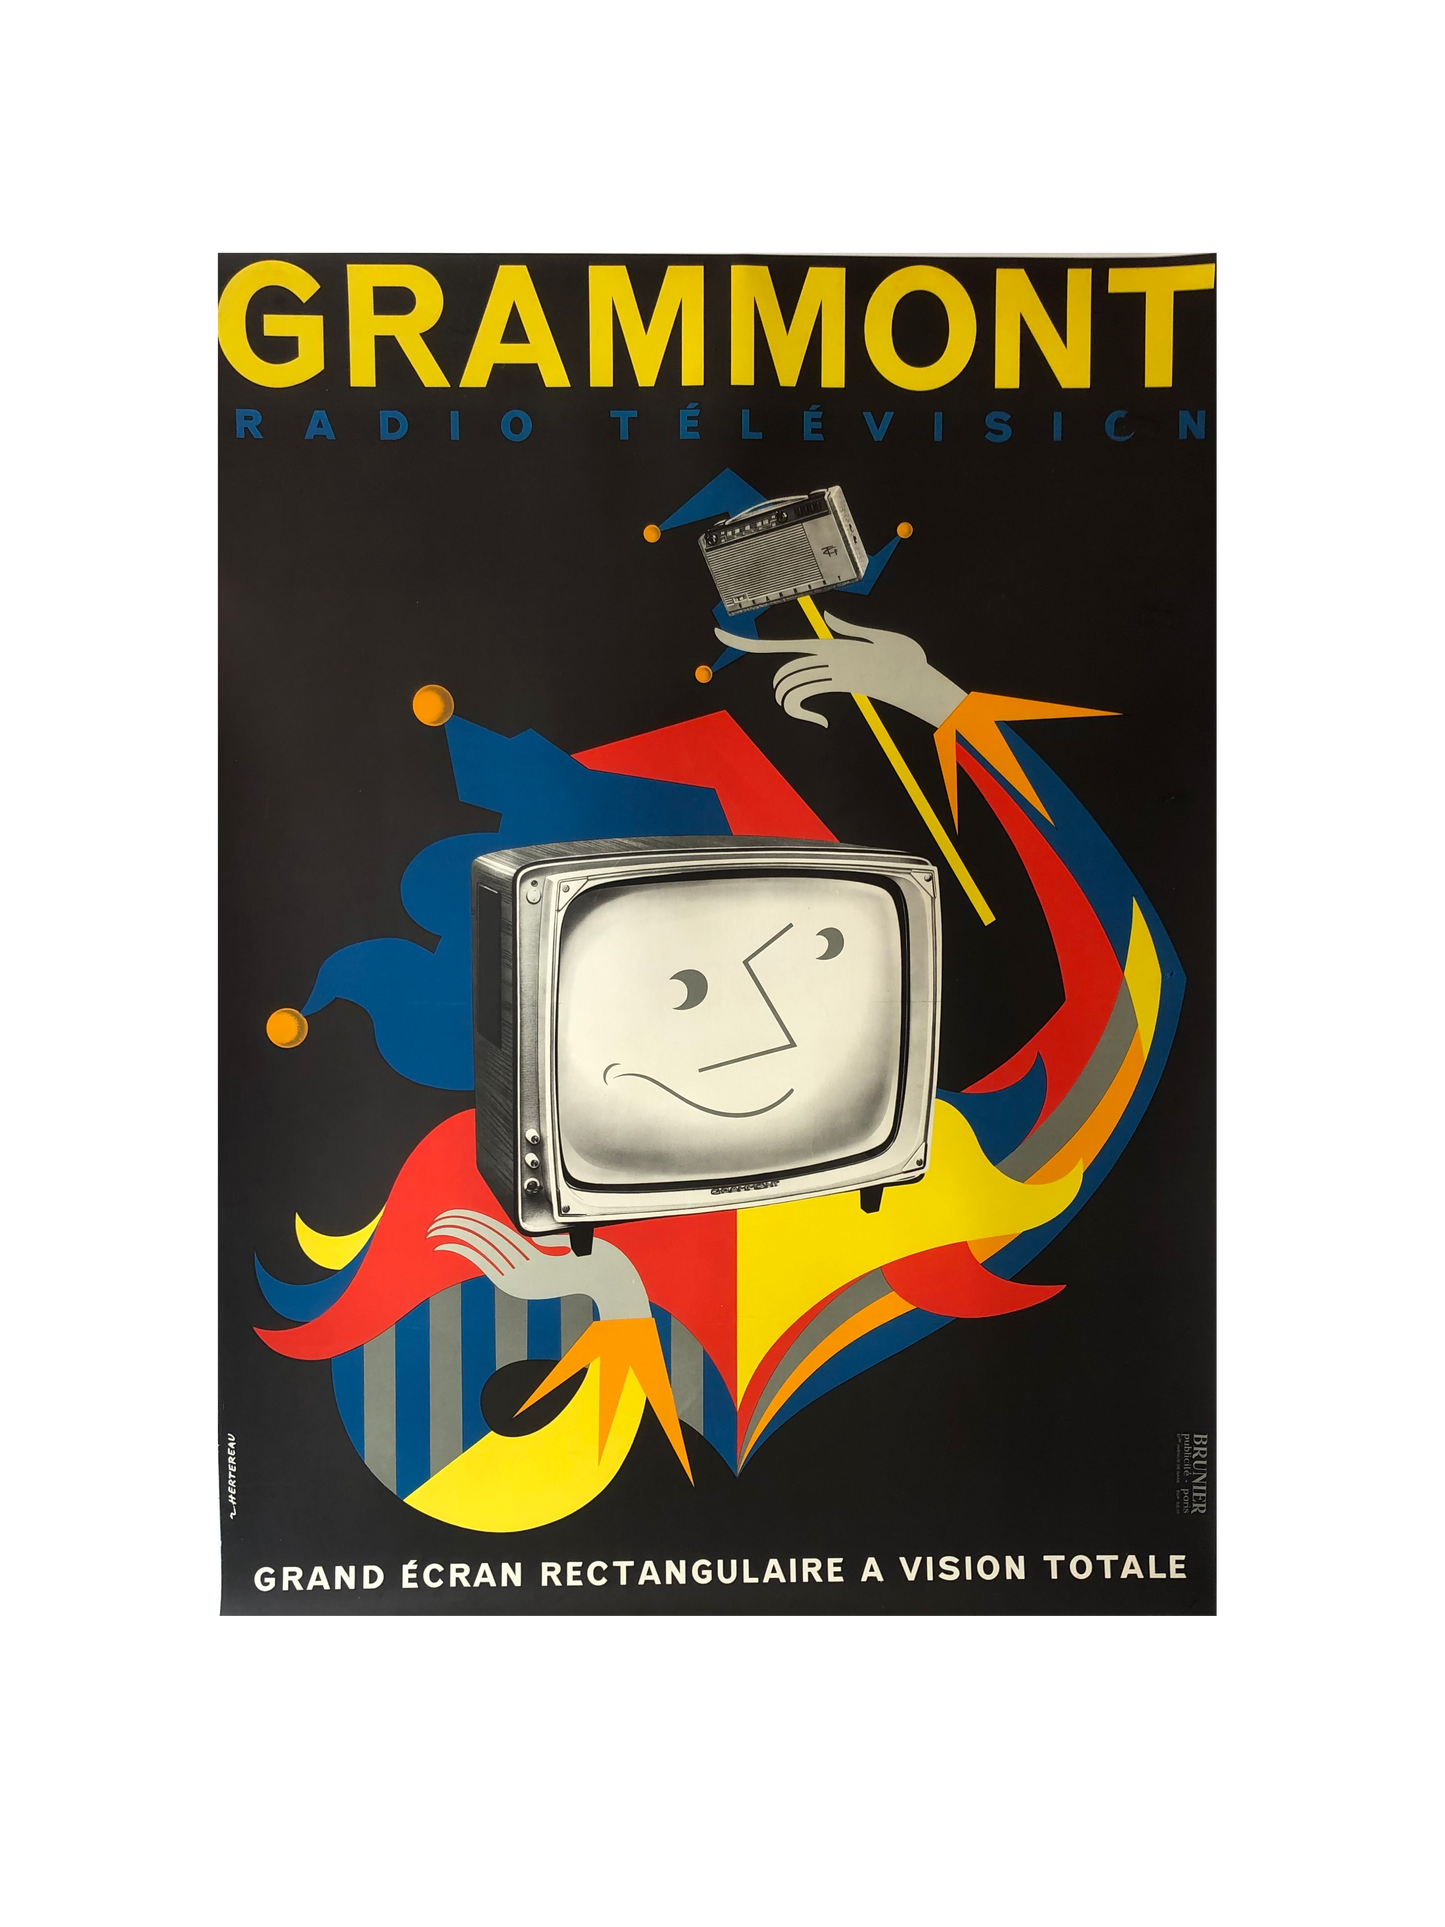 Grammont Television Advertisement